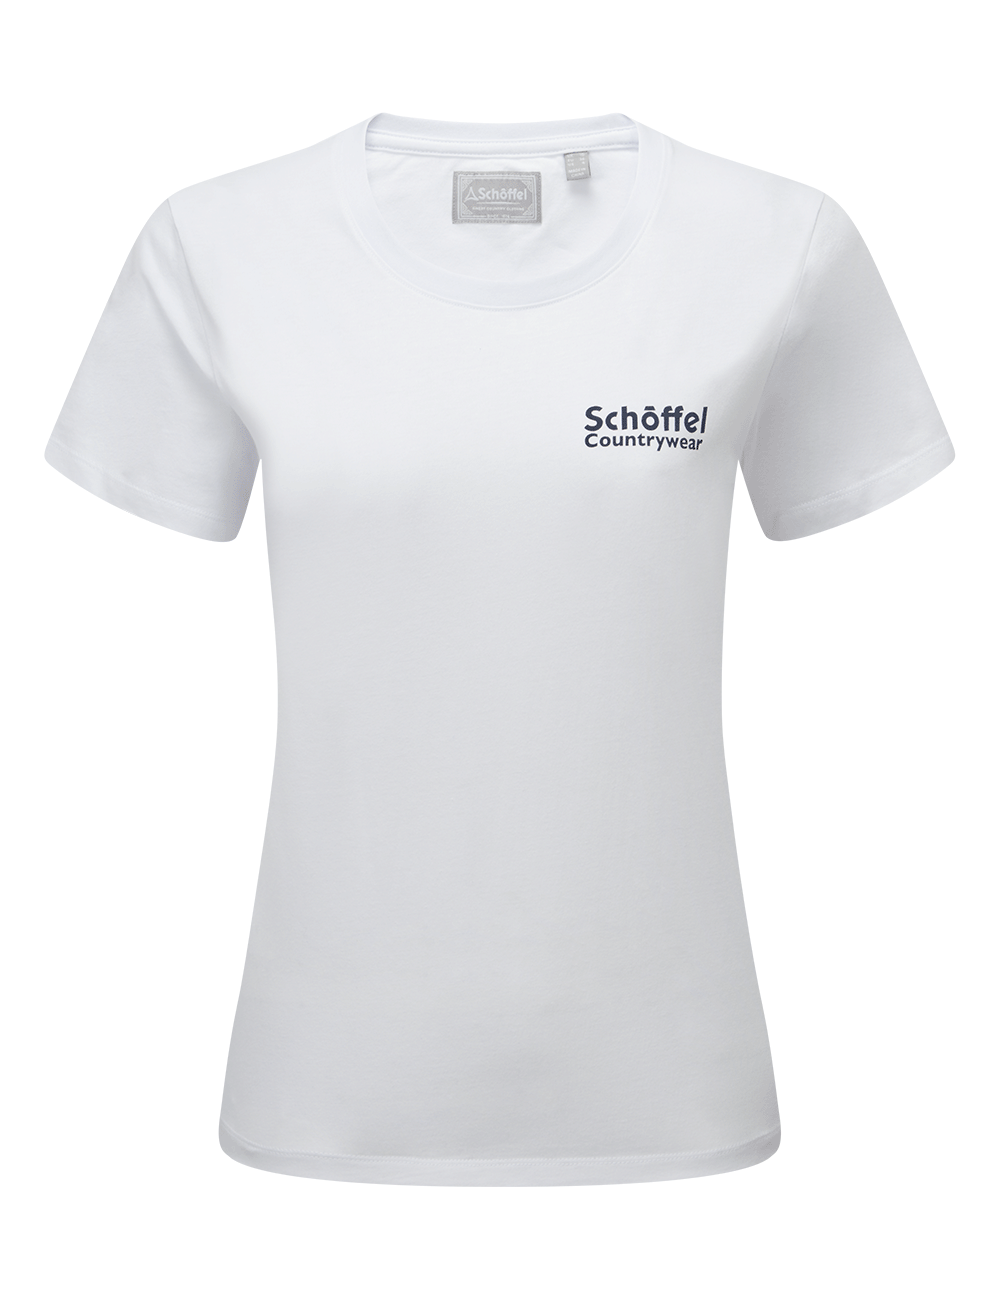 Schoffel Torre T-Shirt - White/Navy